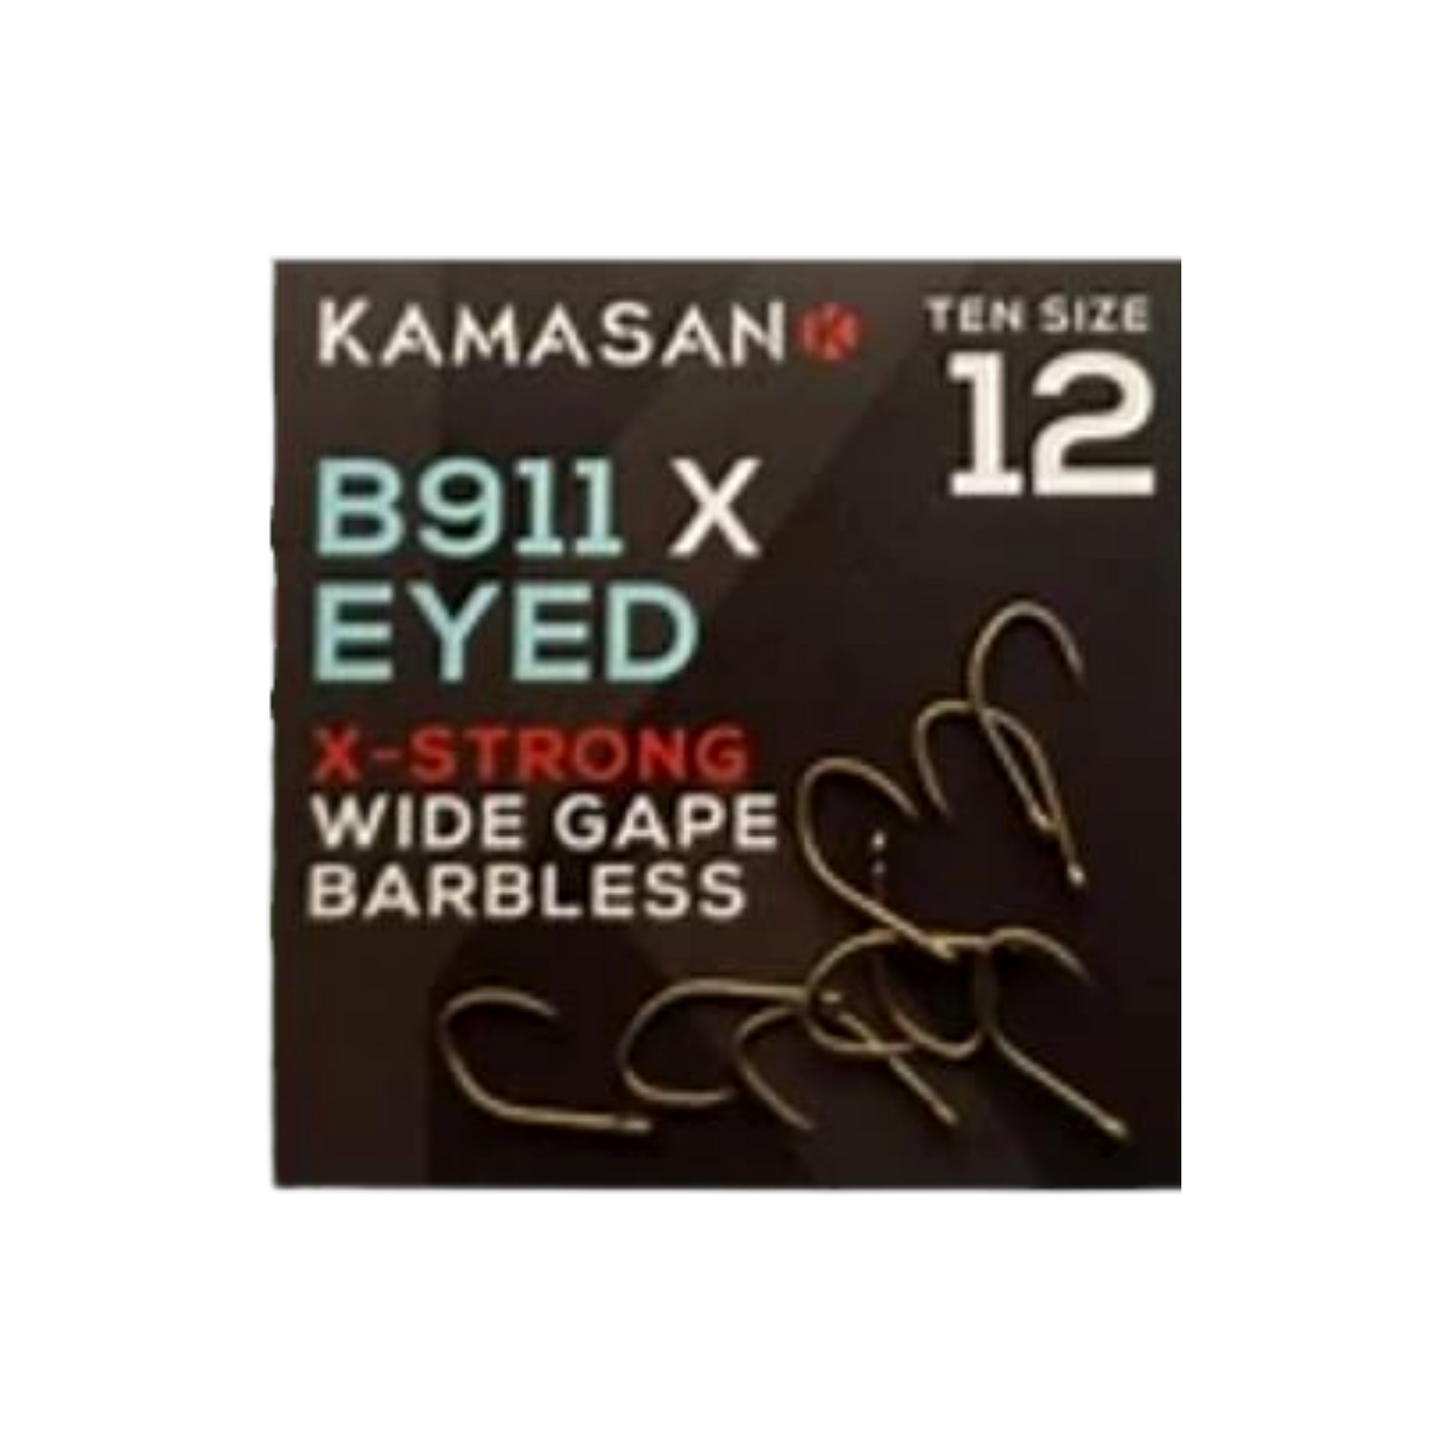 Kamasan B911X Eyed Hooks Extra Strong.